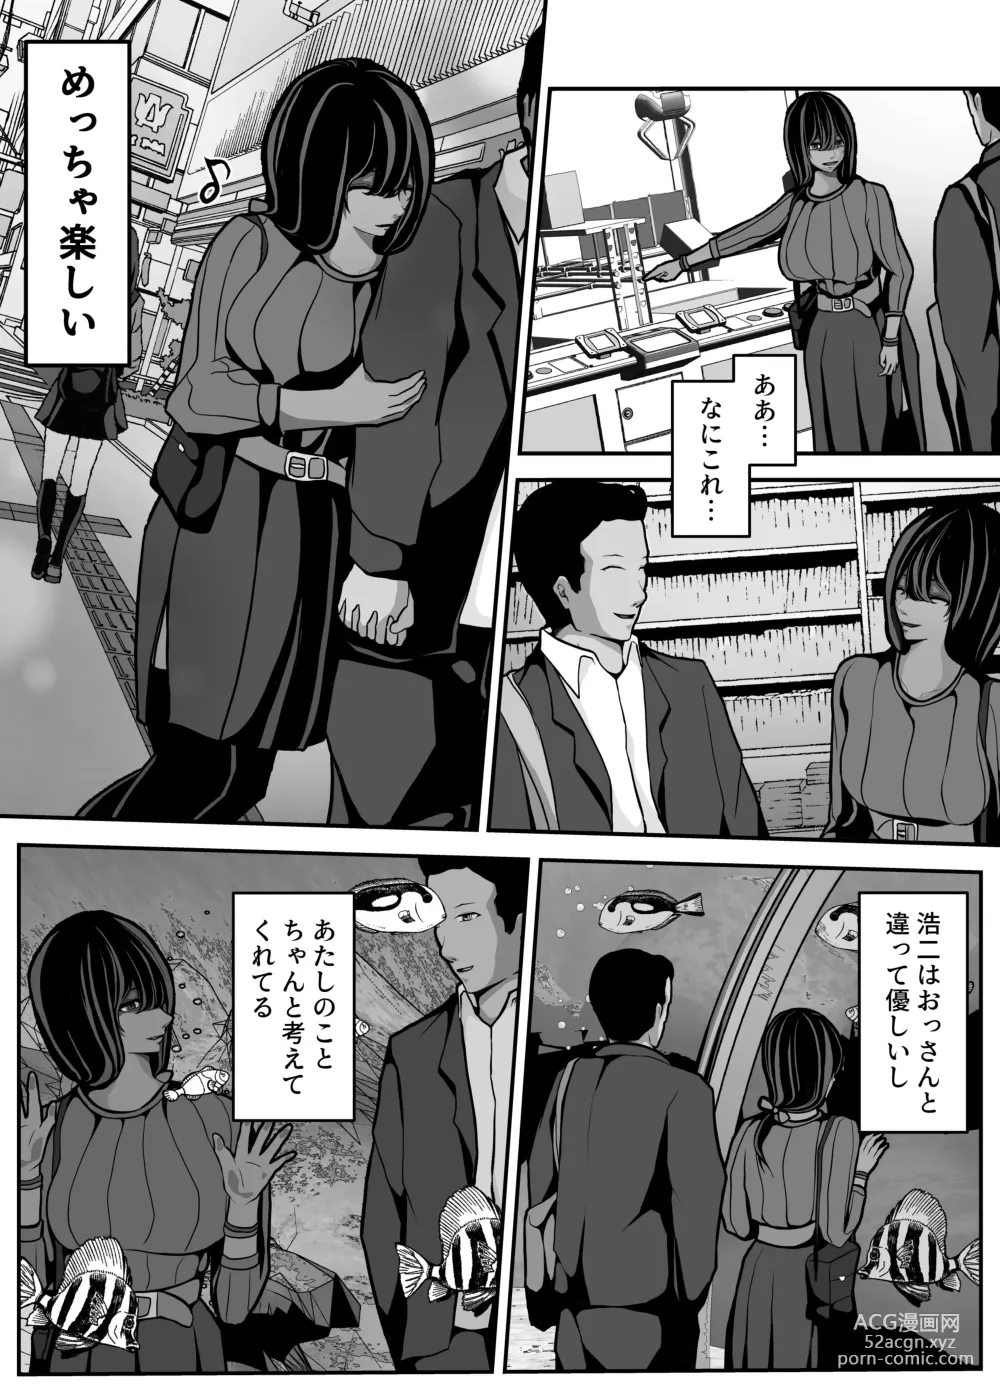 Page 38 of doujinshi Namaiki JK mo, Ossan Chinpo no Mae de wa Muryoku desu.